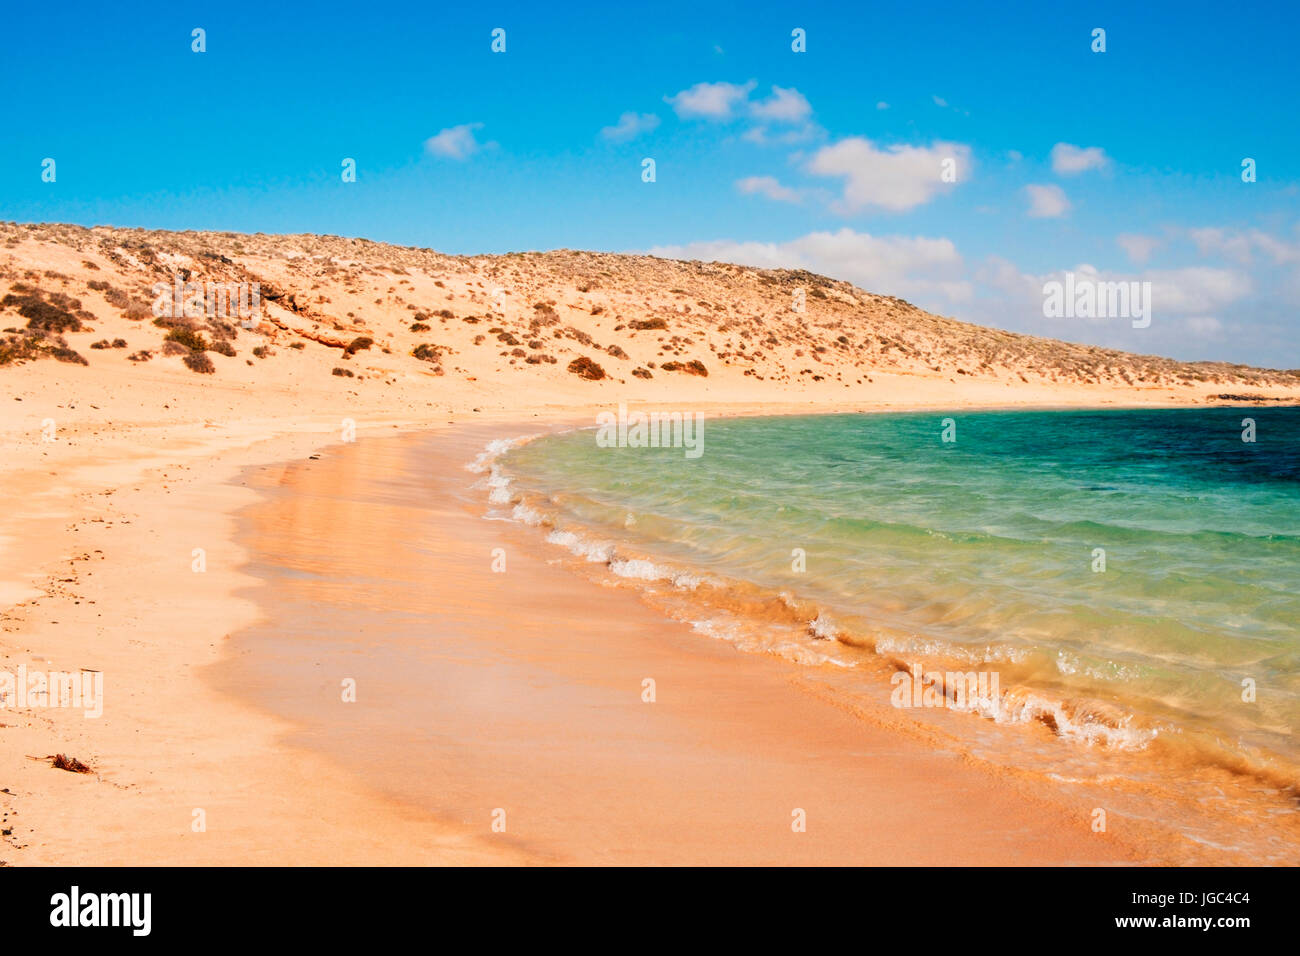 Una vista de la arena blanca y el agua cristalina de la Francesa de playa en la isla de La Graciosa, en las Islas Canarias, España Foto de stock